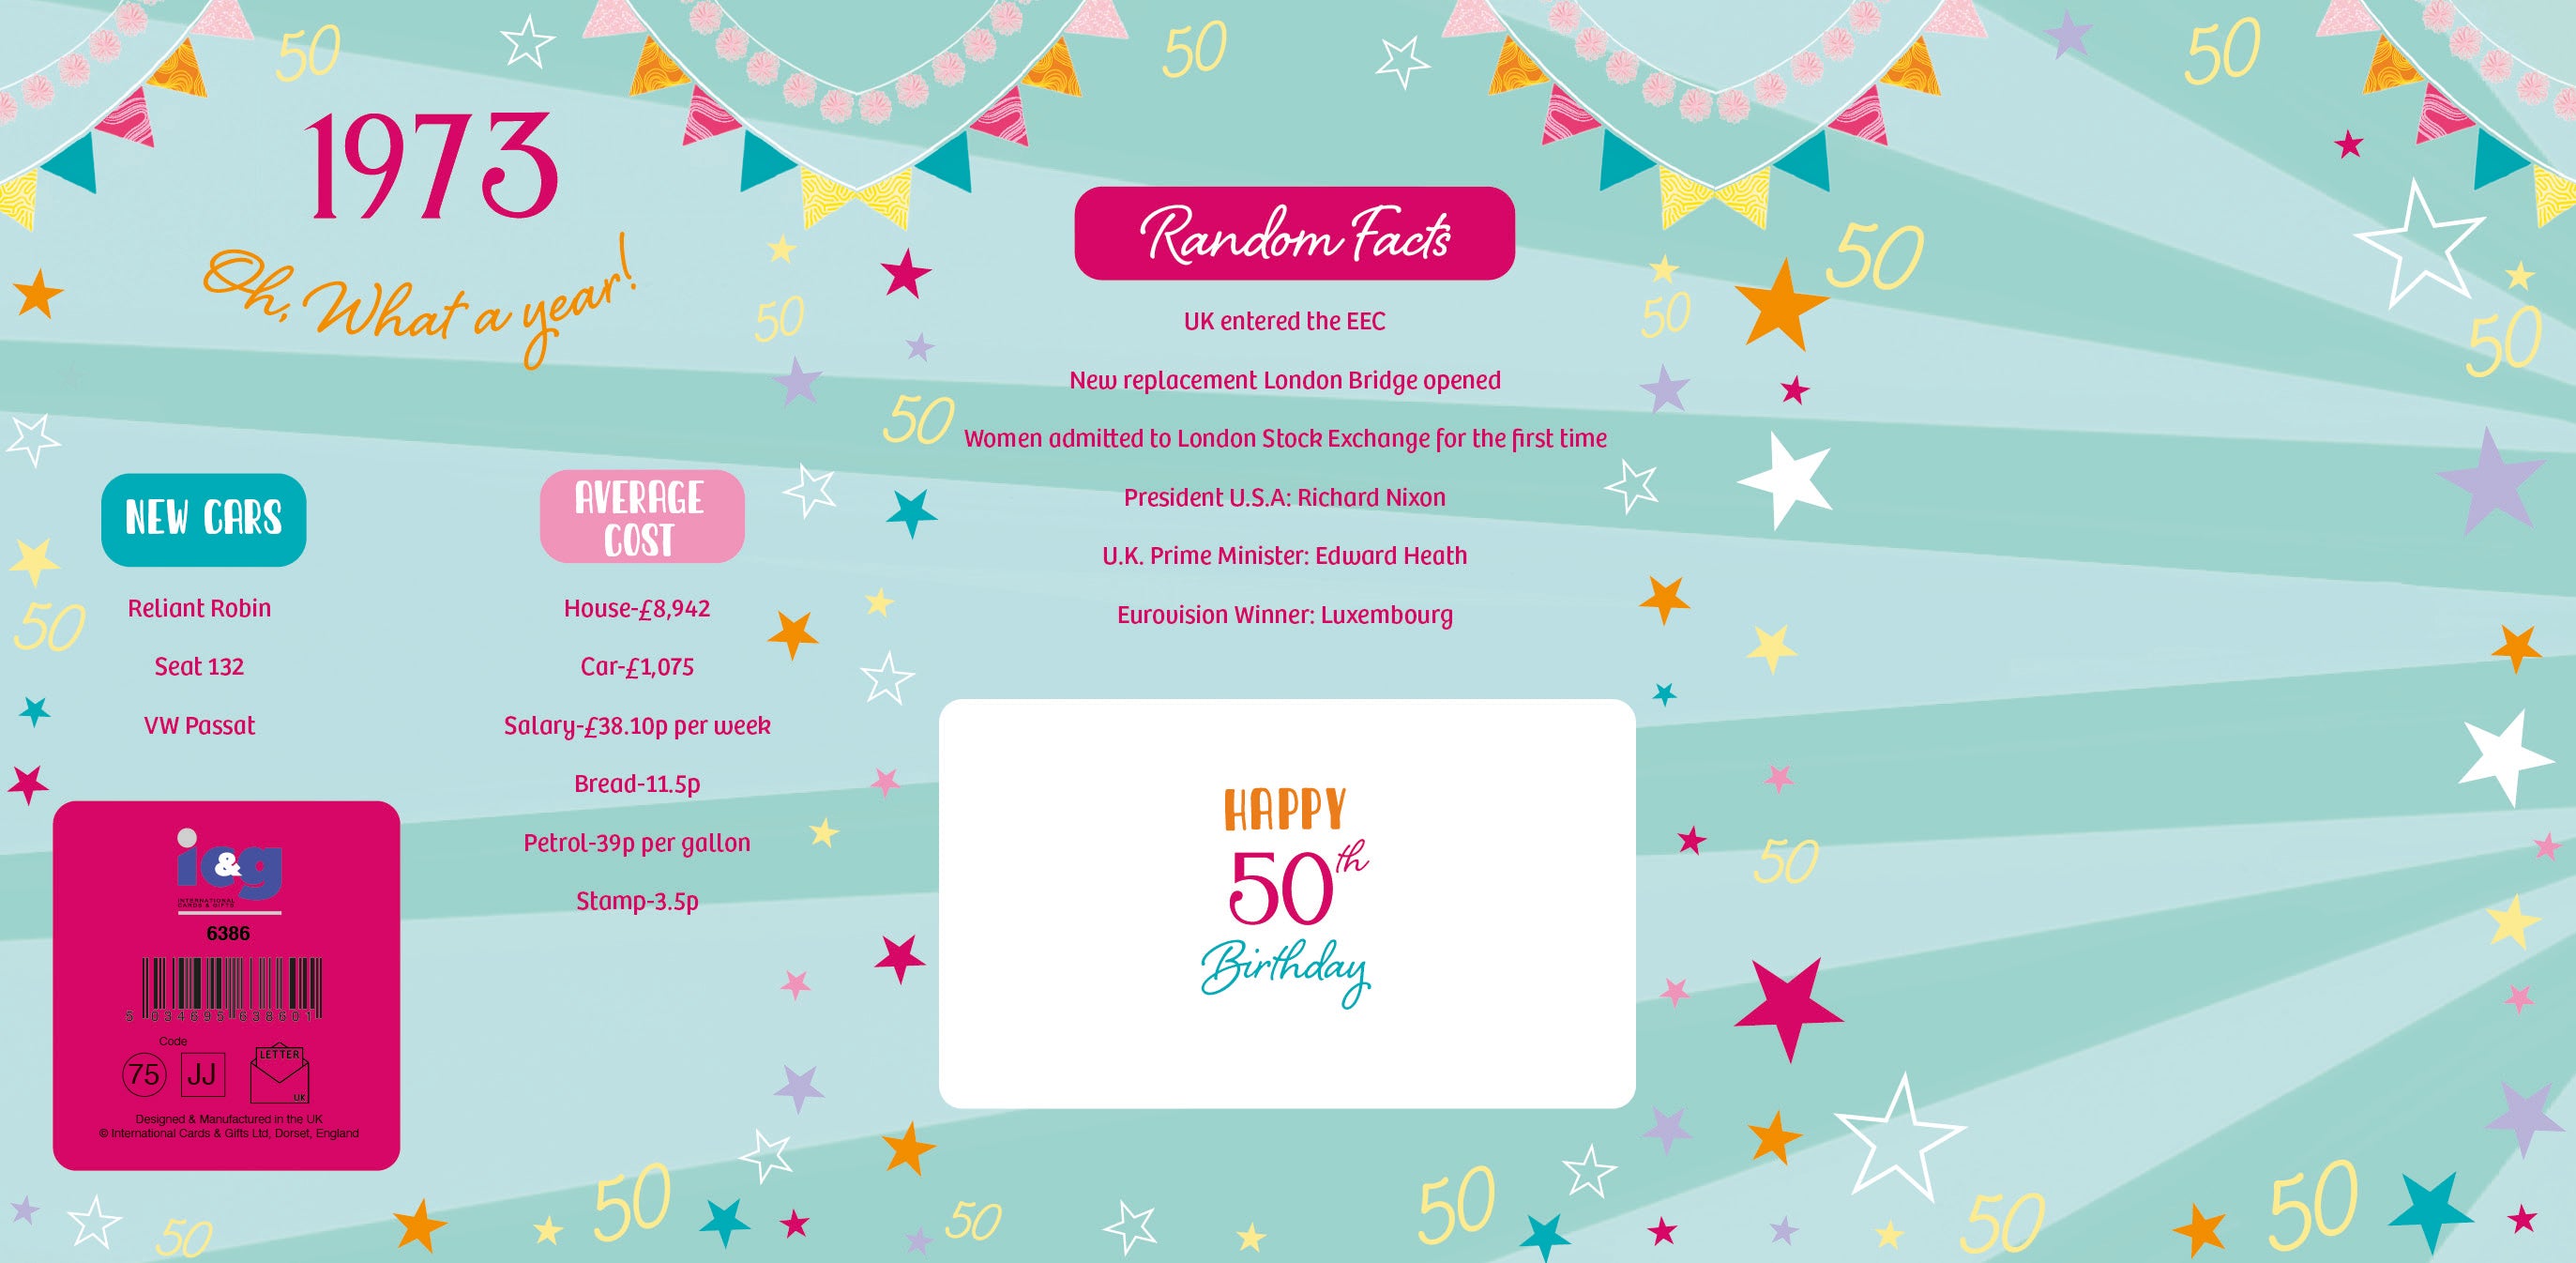 50th birthday card- born in 1973